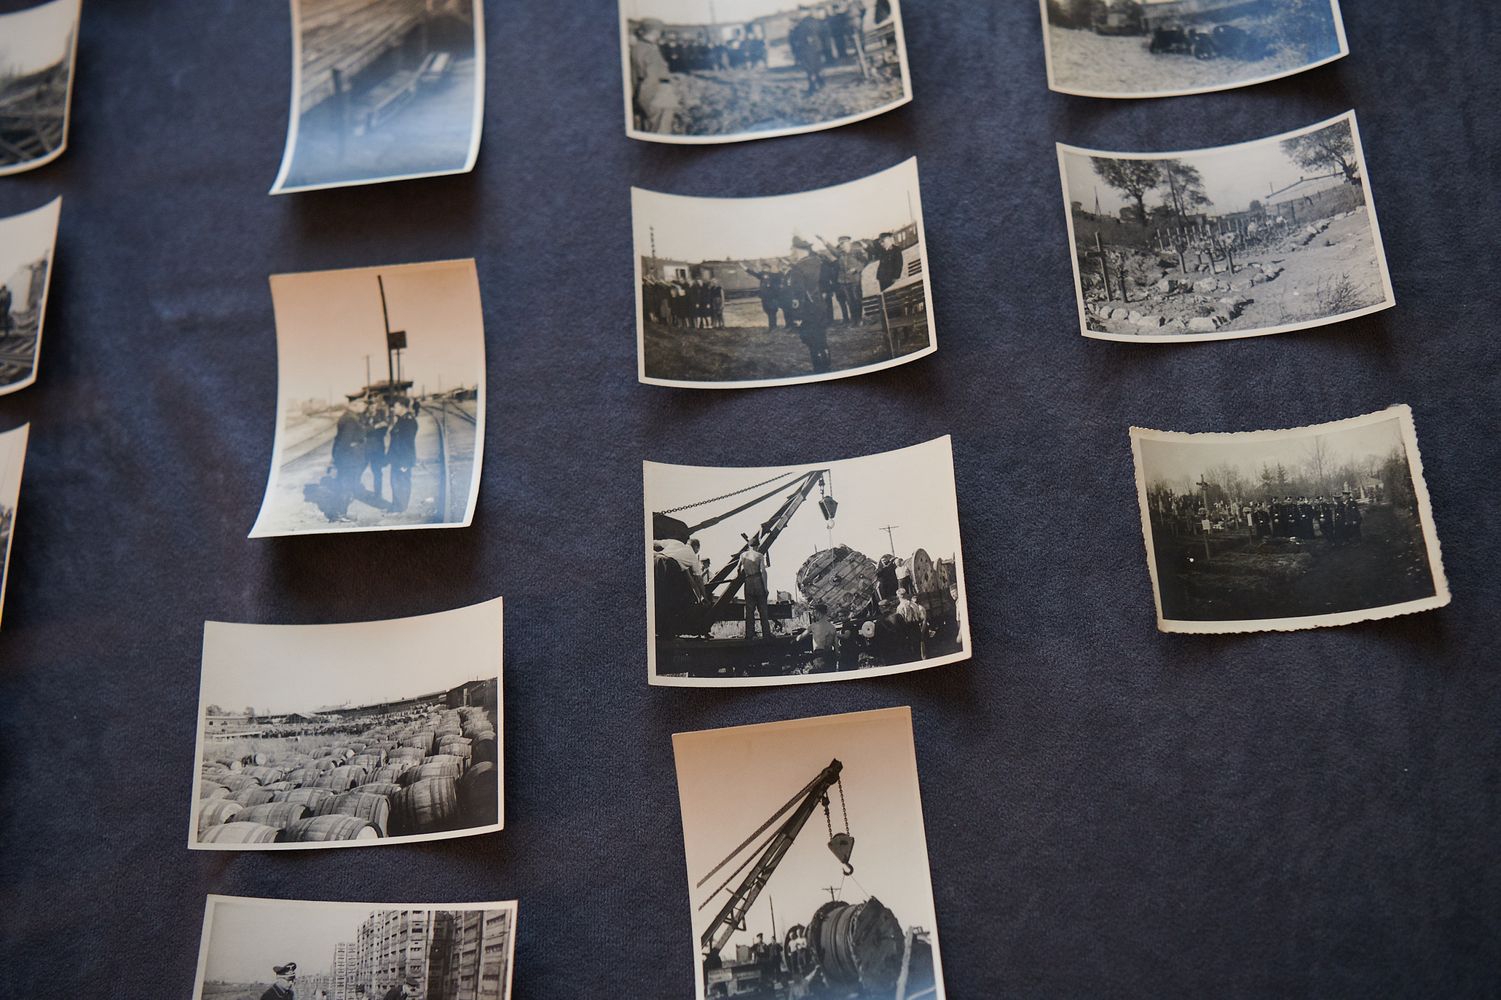 Muzeum zdobyło nieznane dotąd niemieckie zdjęcia z Powstania Warszawskiego